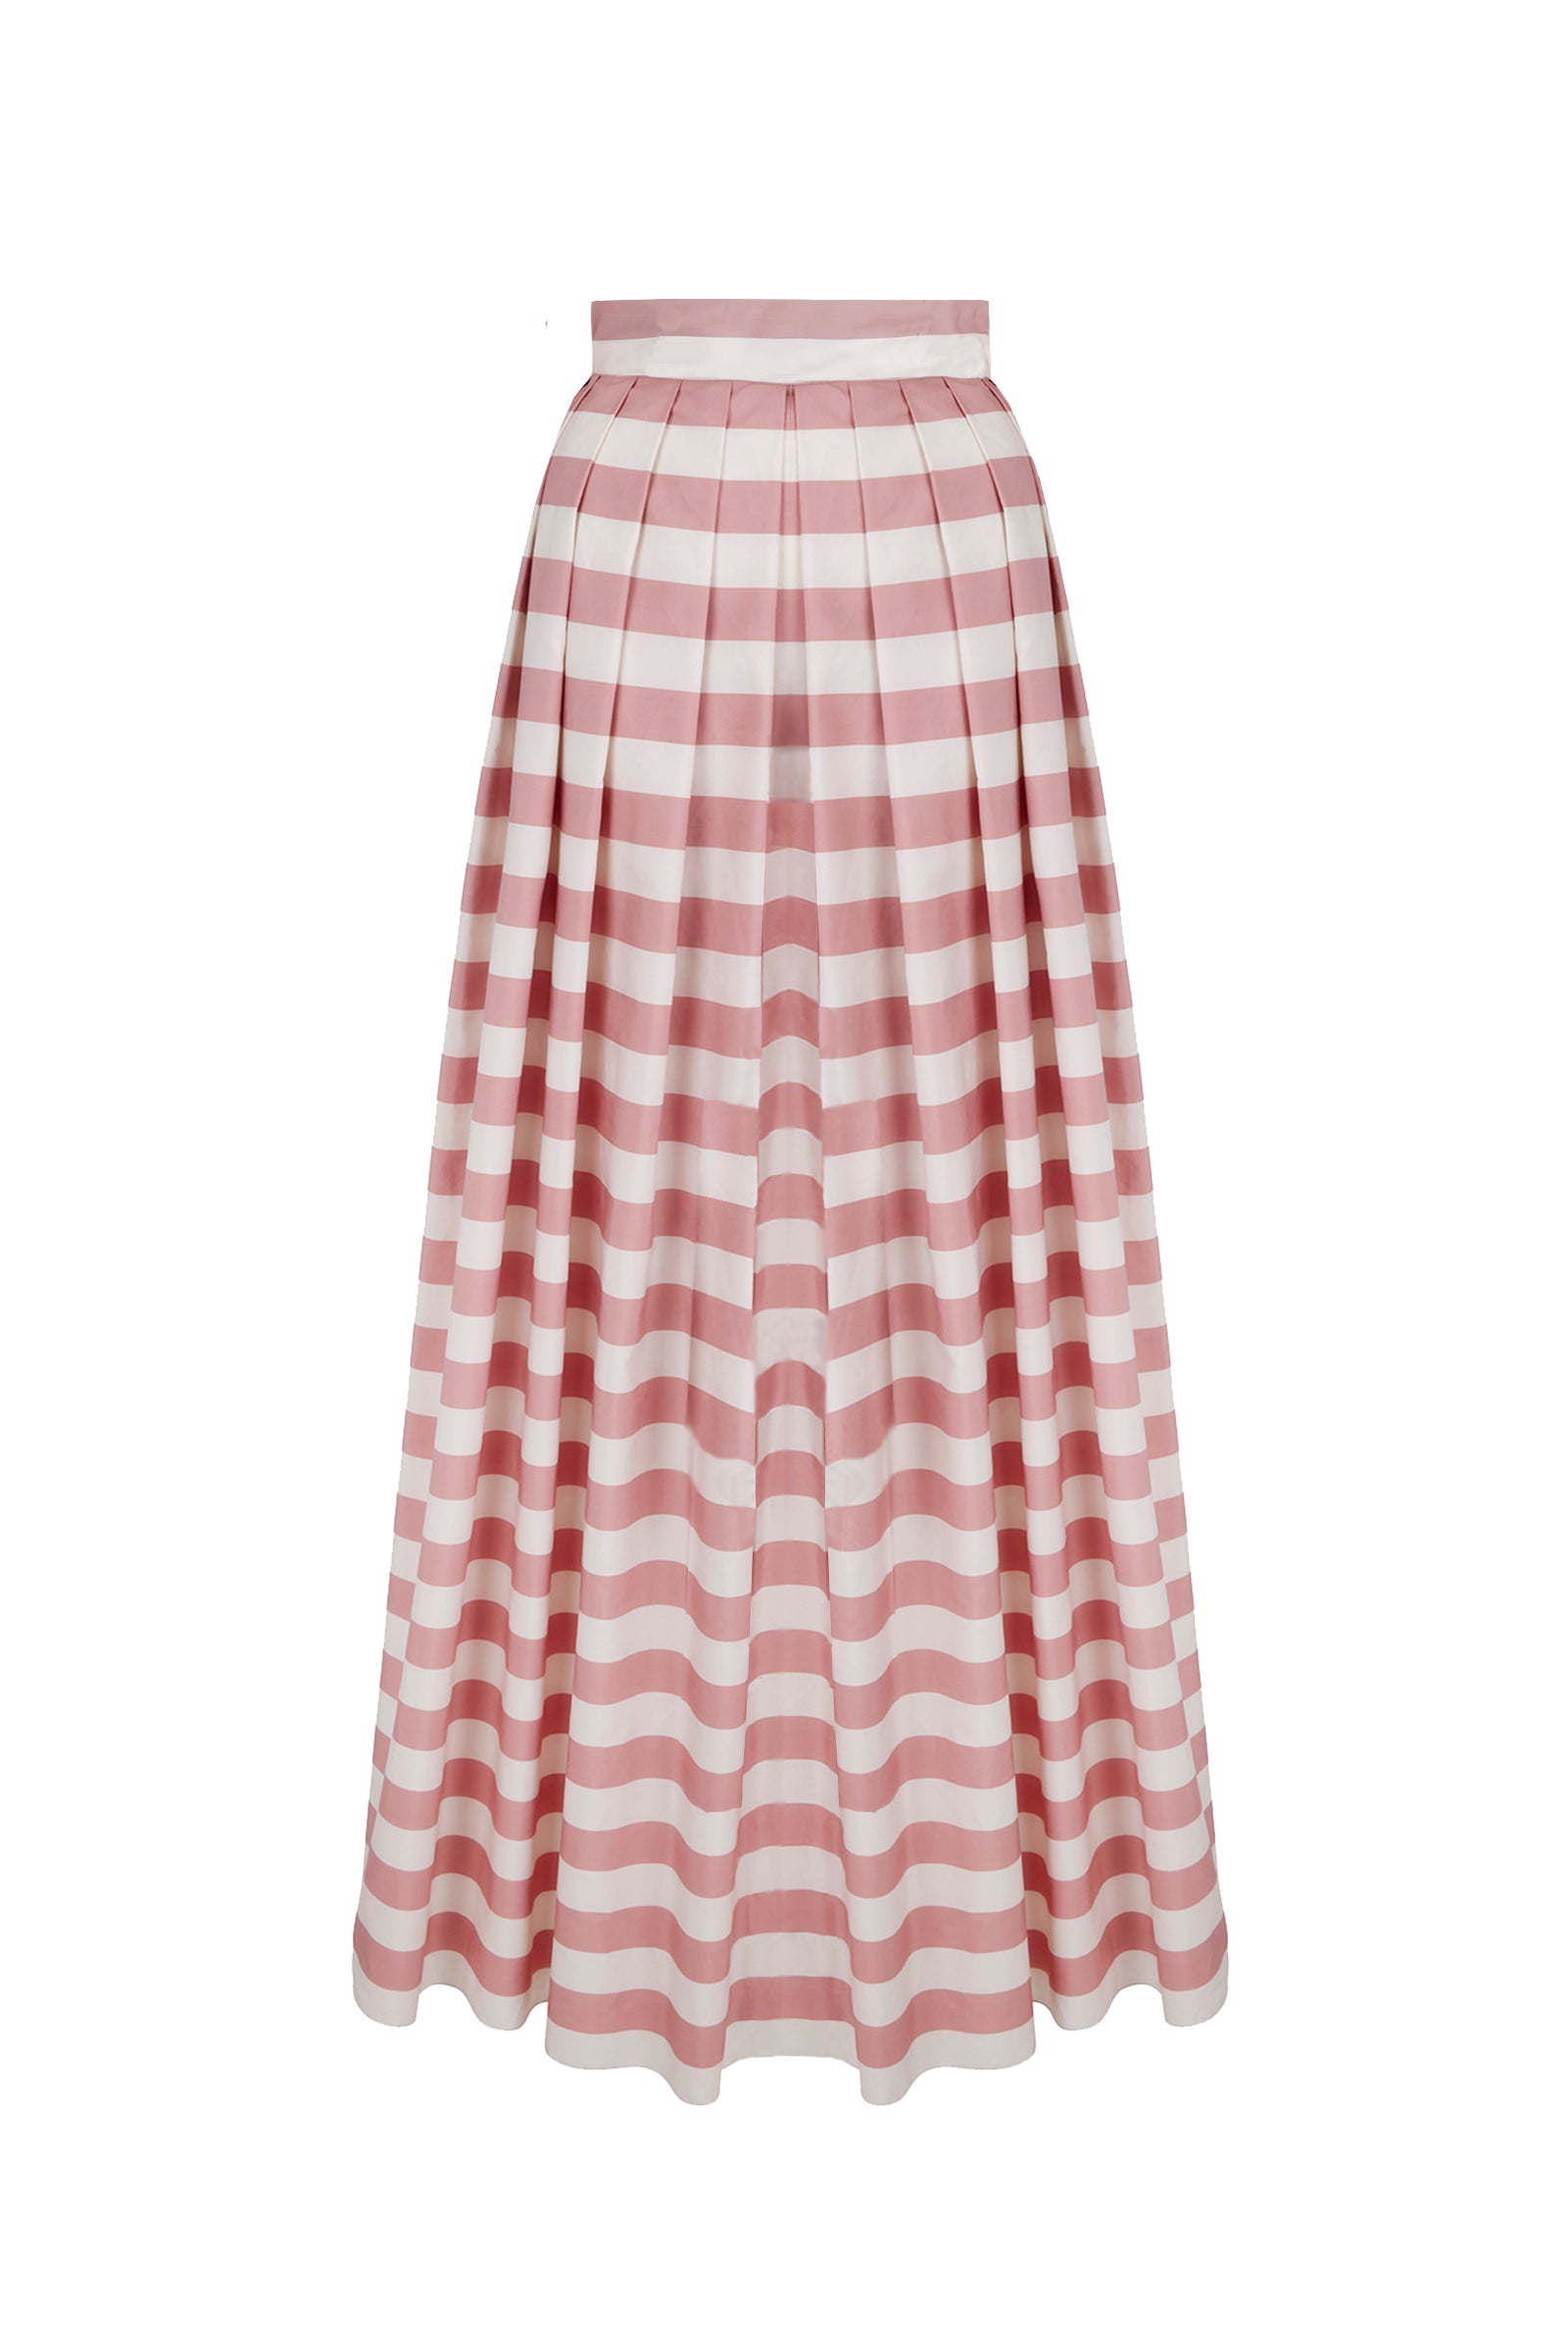 Gemma Cotton Stripe Floor Length Skirt